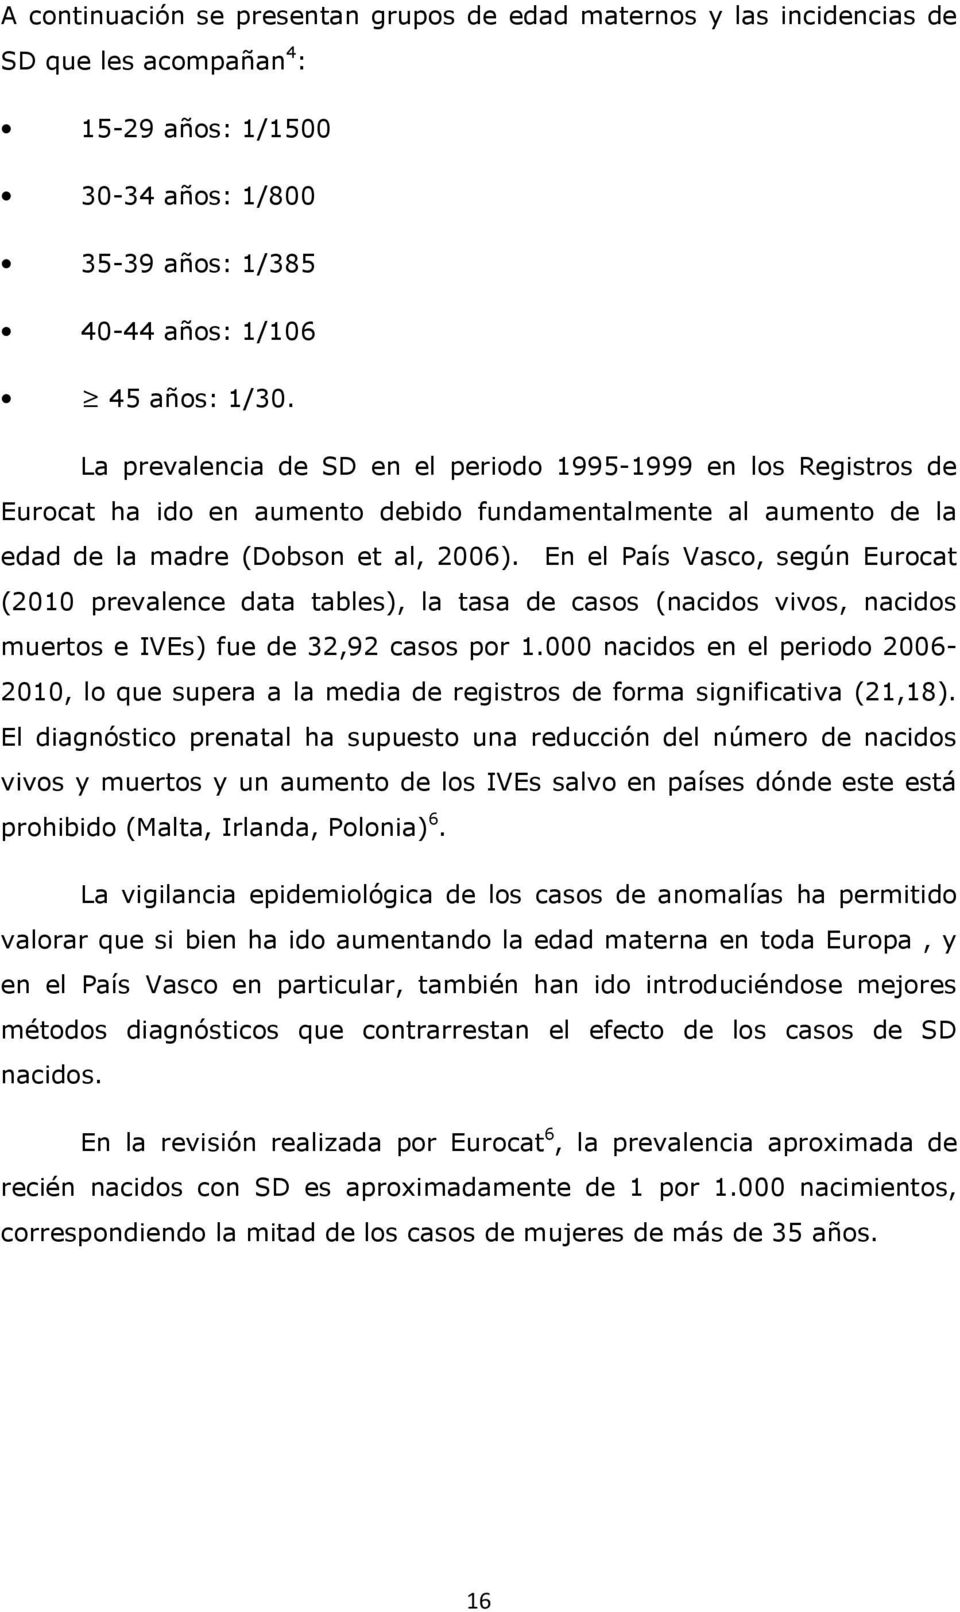 En el País Vasco, según Eurocat (2010 prevalence data tables), la tasa de casos (nacidos vivos, nacidos muertos e IVEs) fue de 32,92 casos por 1.